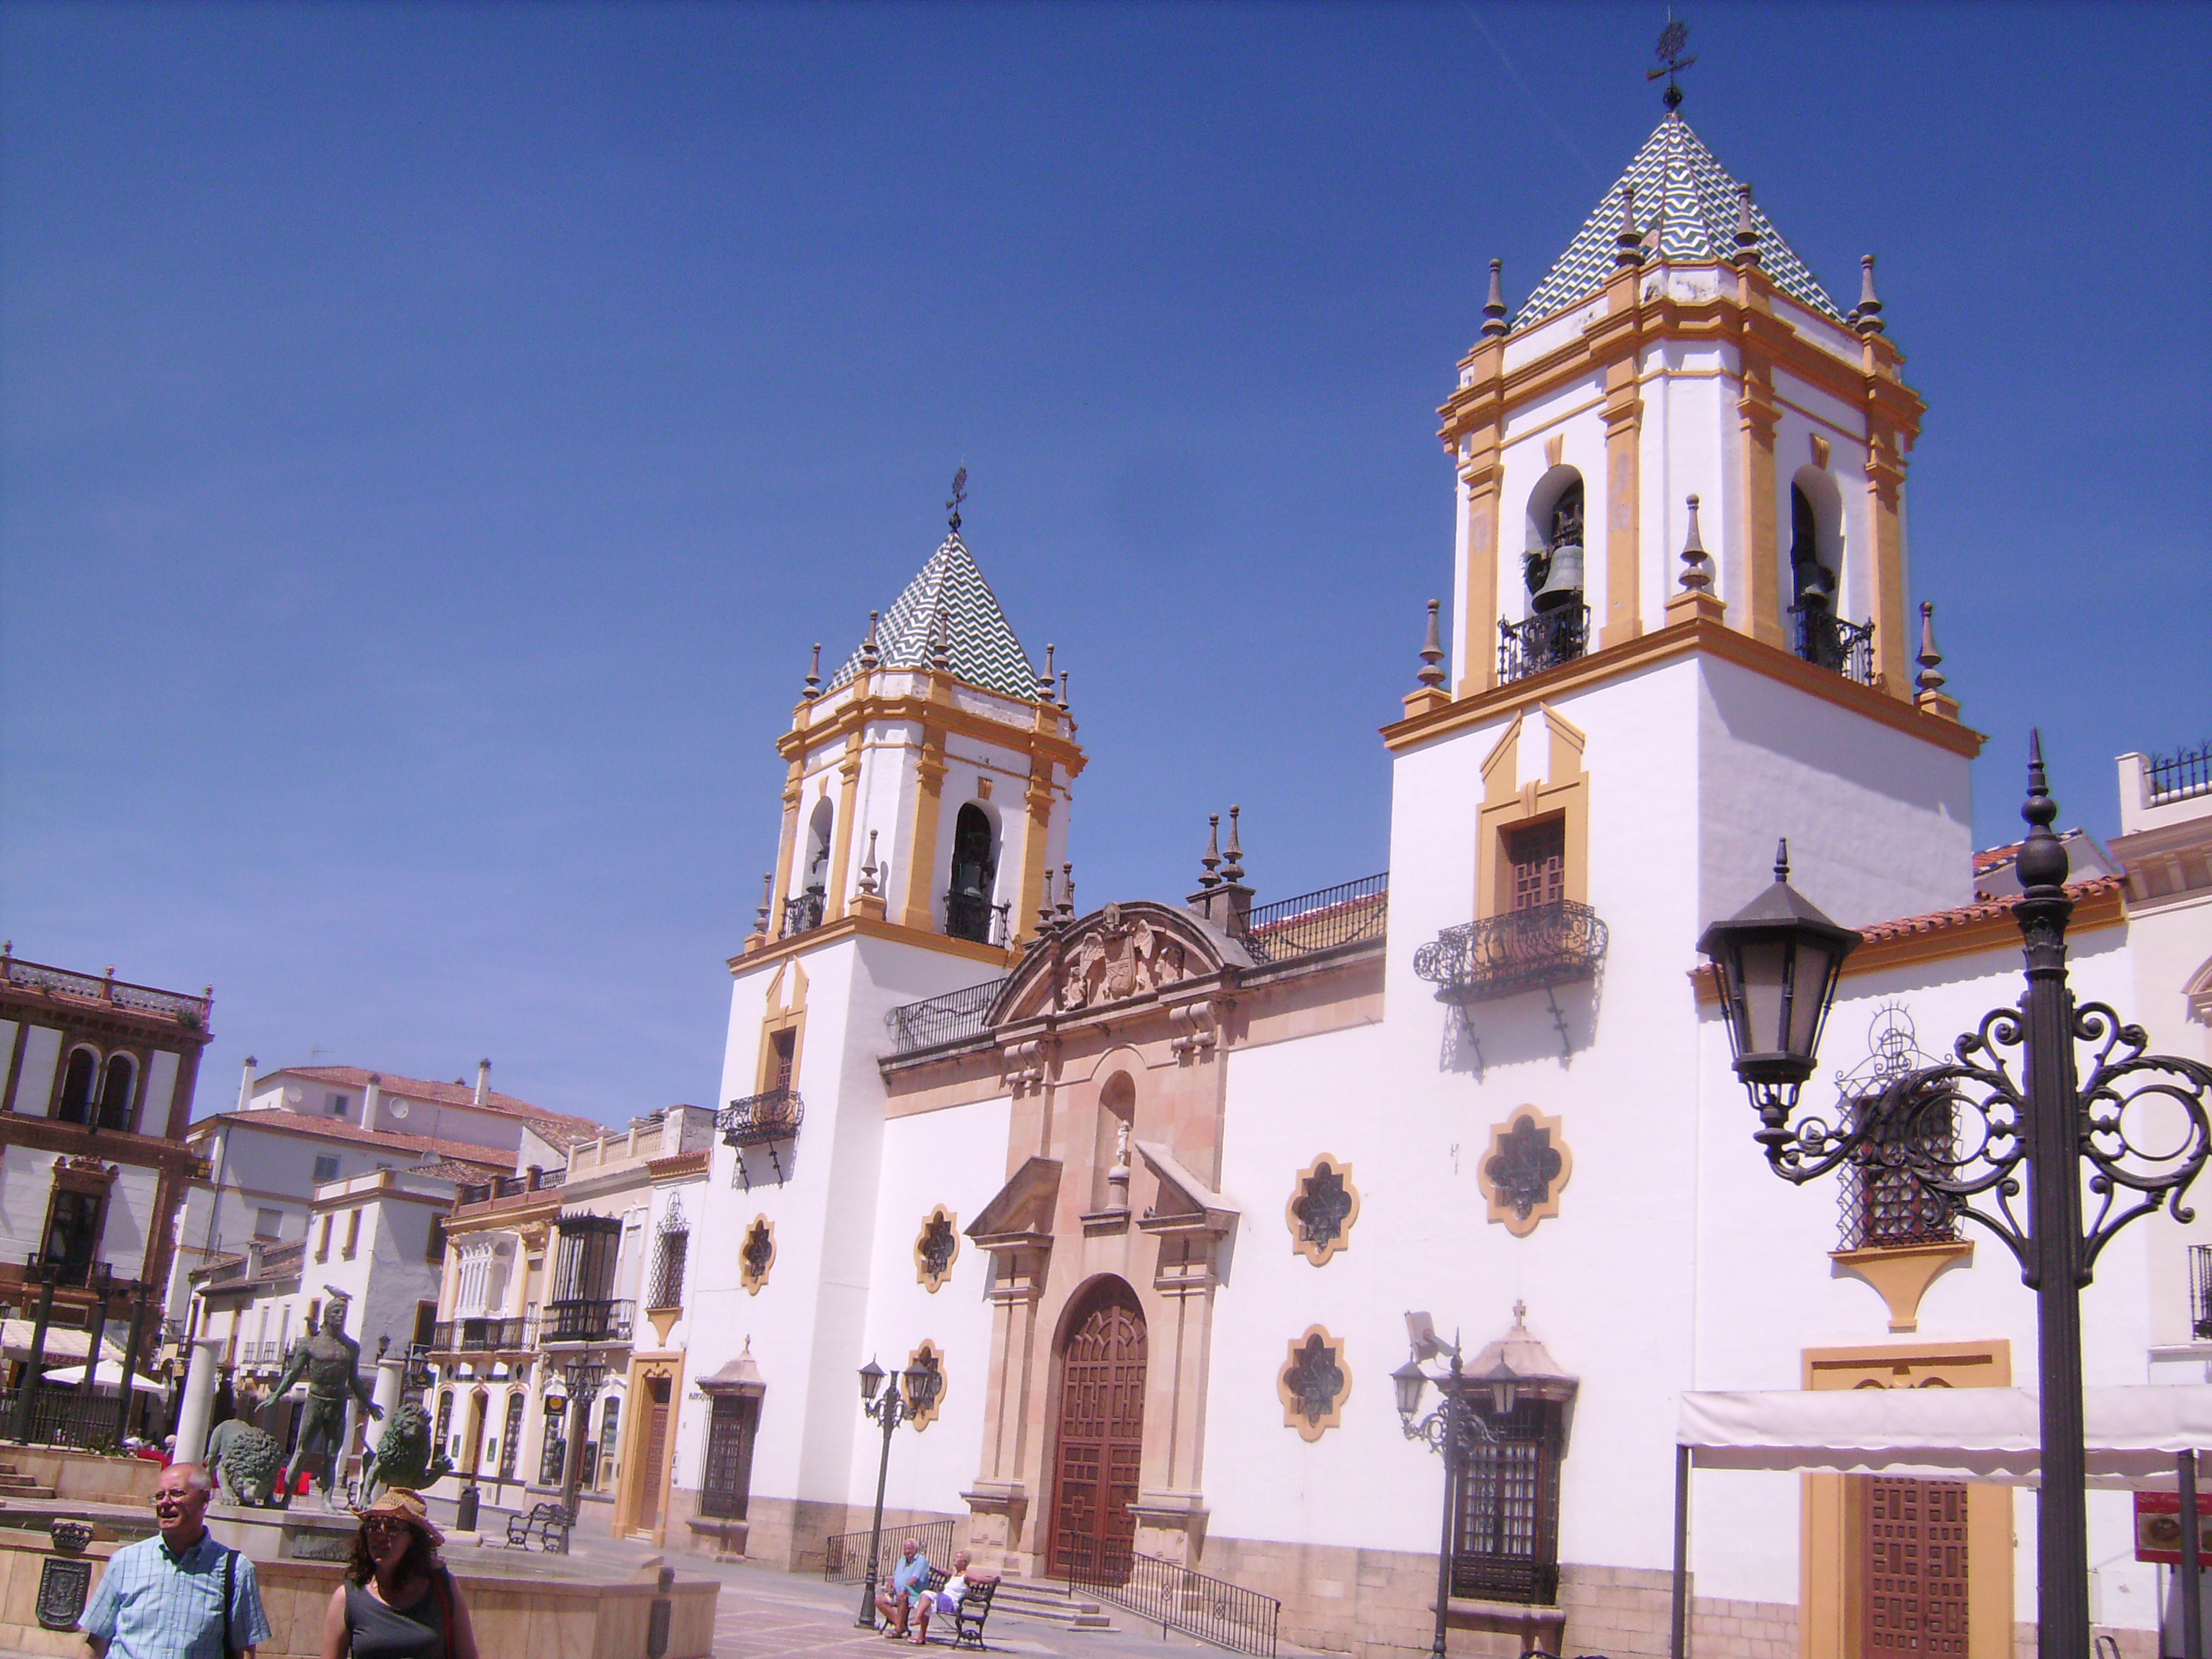 A Socorro plébániatemplom (Parroquia de Nuestra Señora del Socorro) 1956-ban épült, Ronda legnagyobb temploma